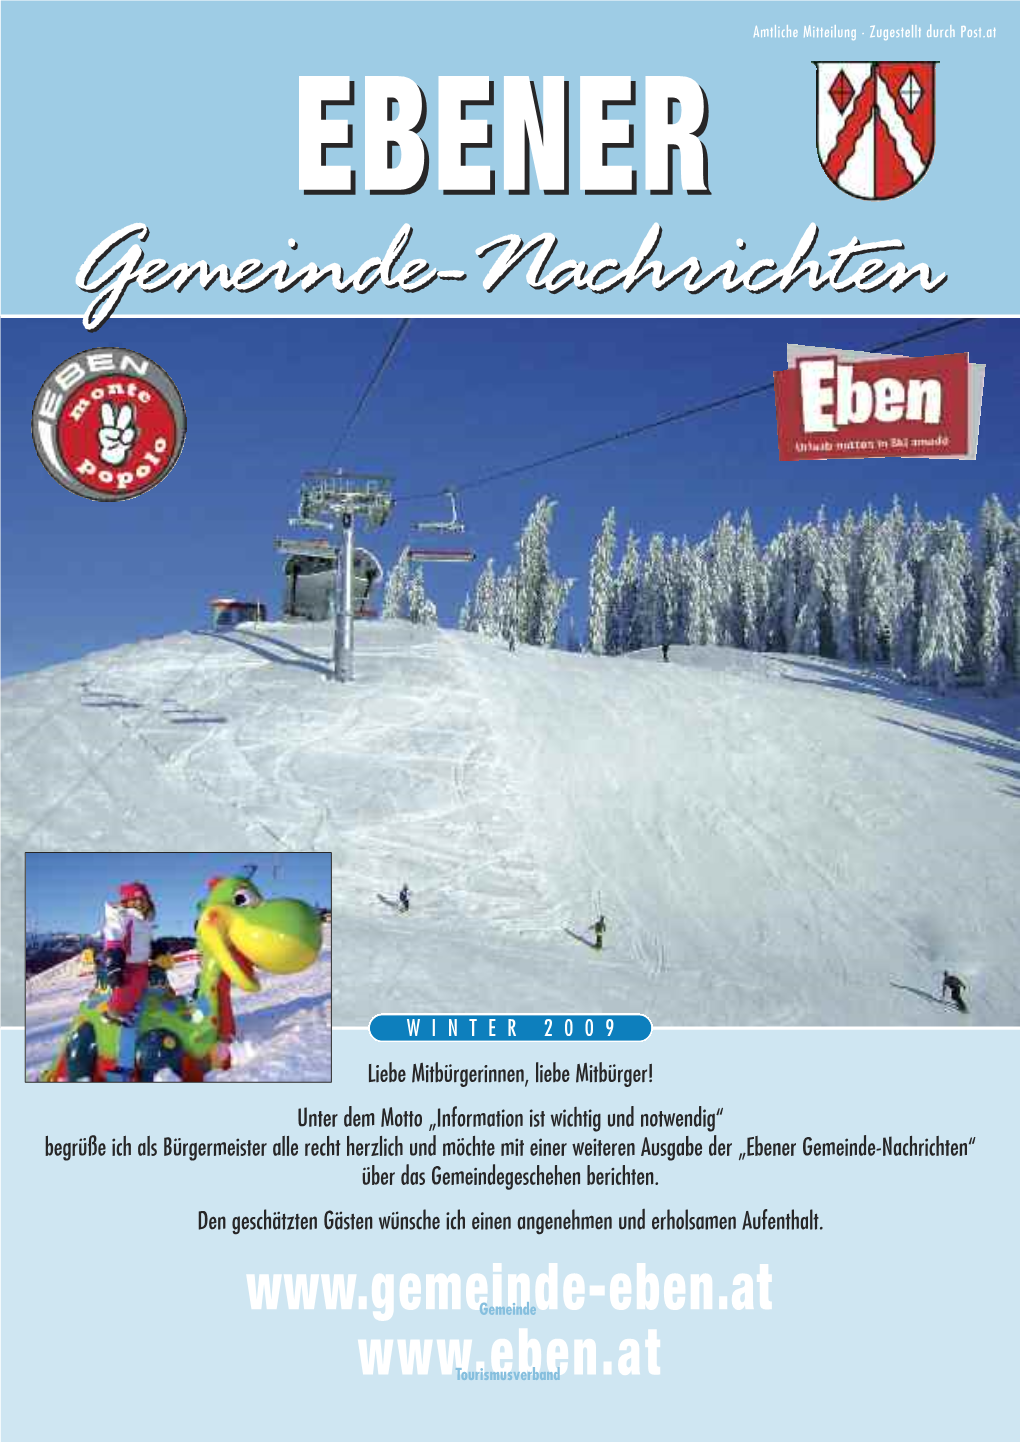 Gemeindezeitung Winter 2009